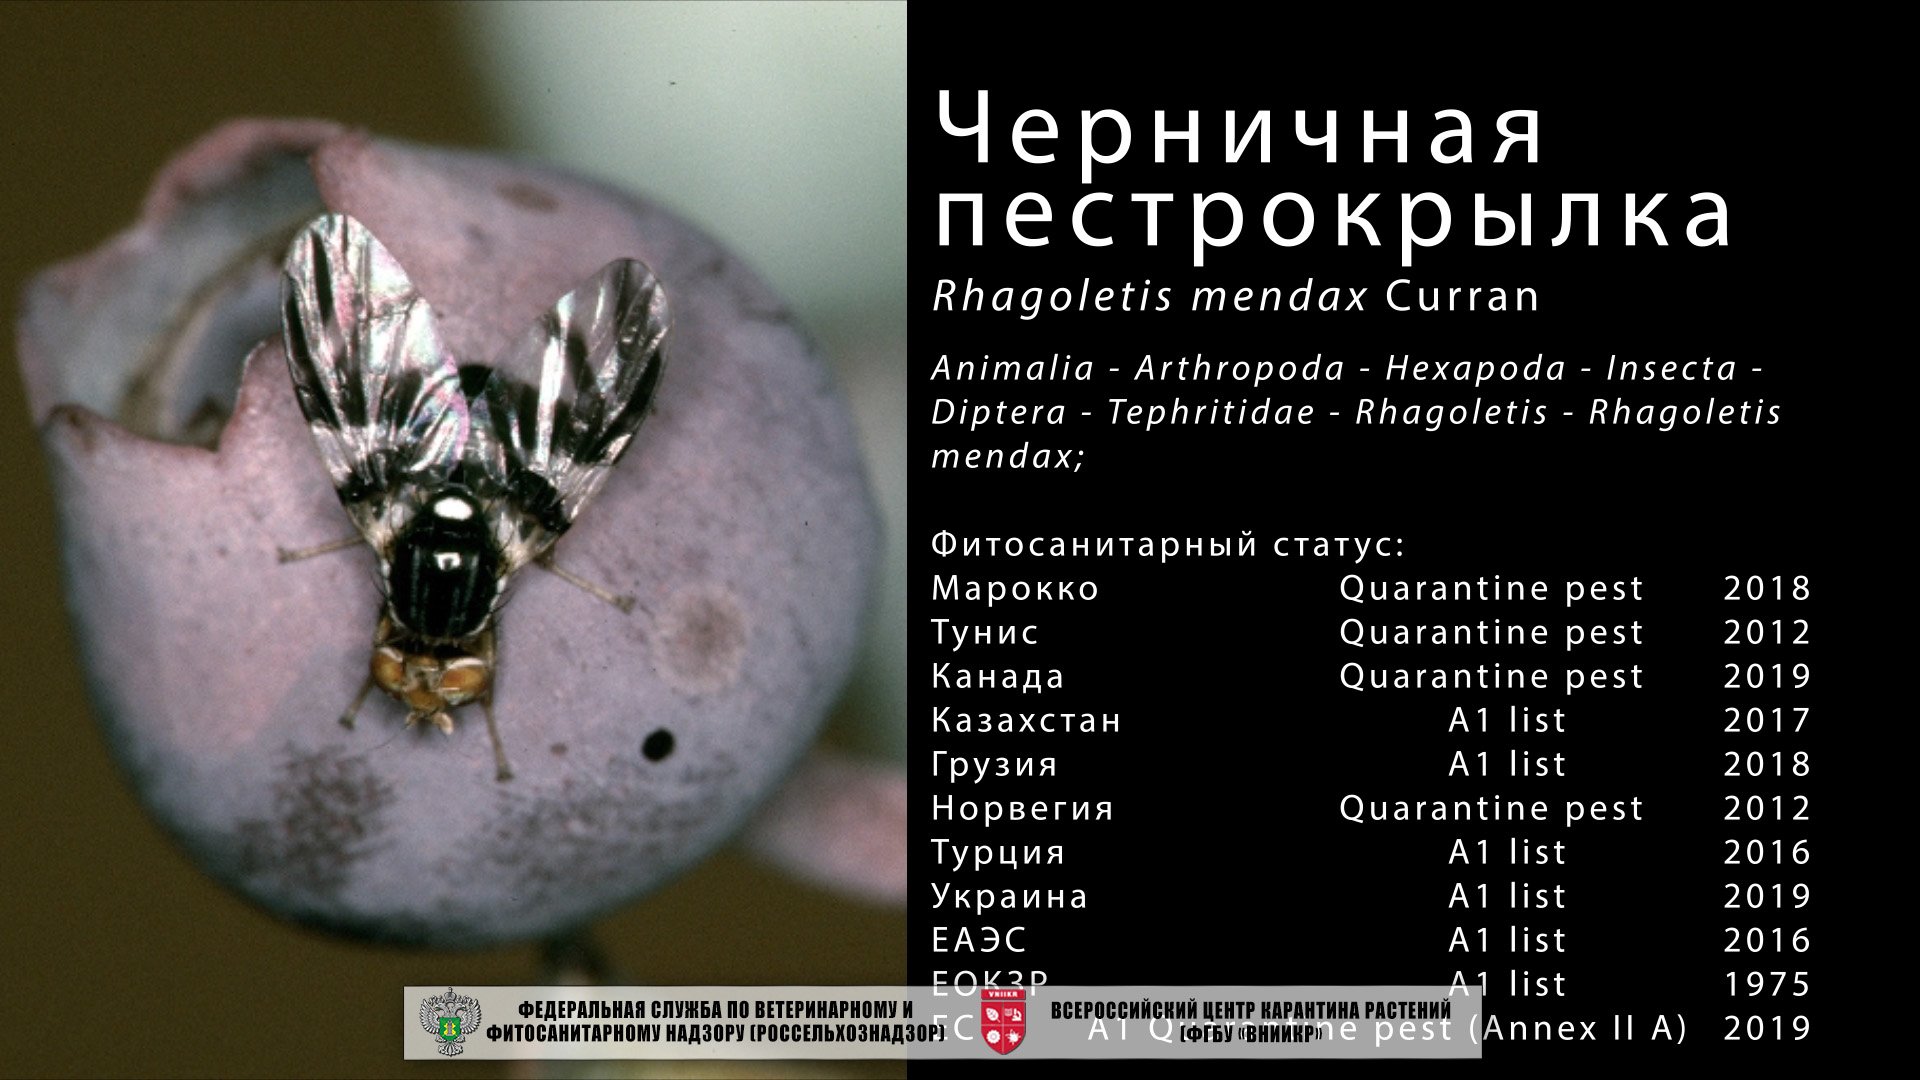 Черничная пестрокрылка  (Rhagoletis mendax Curran)